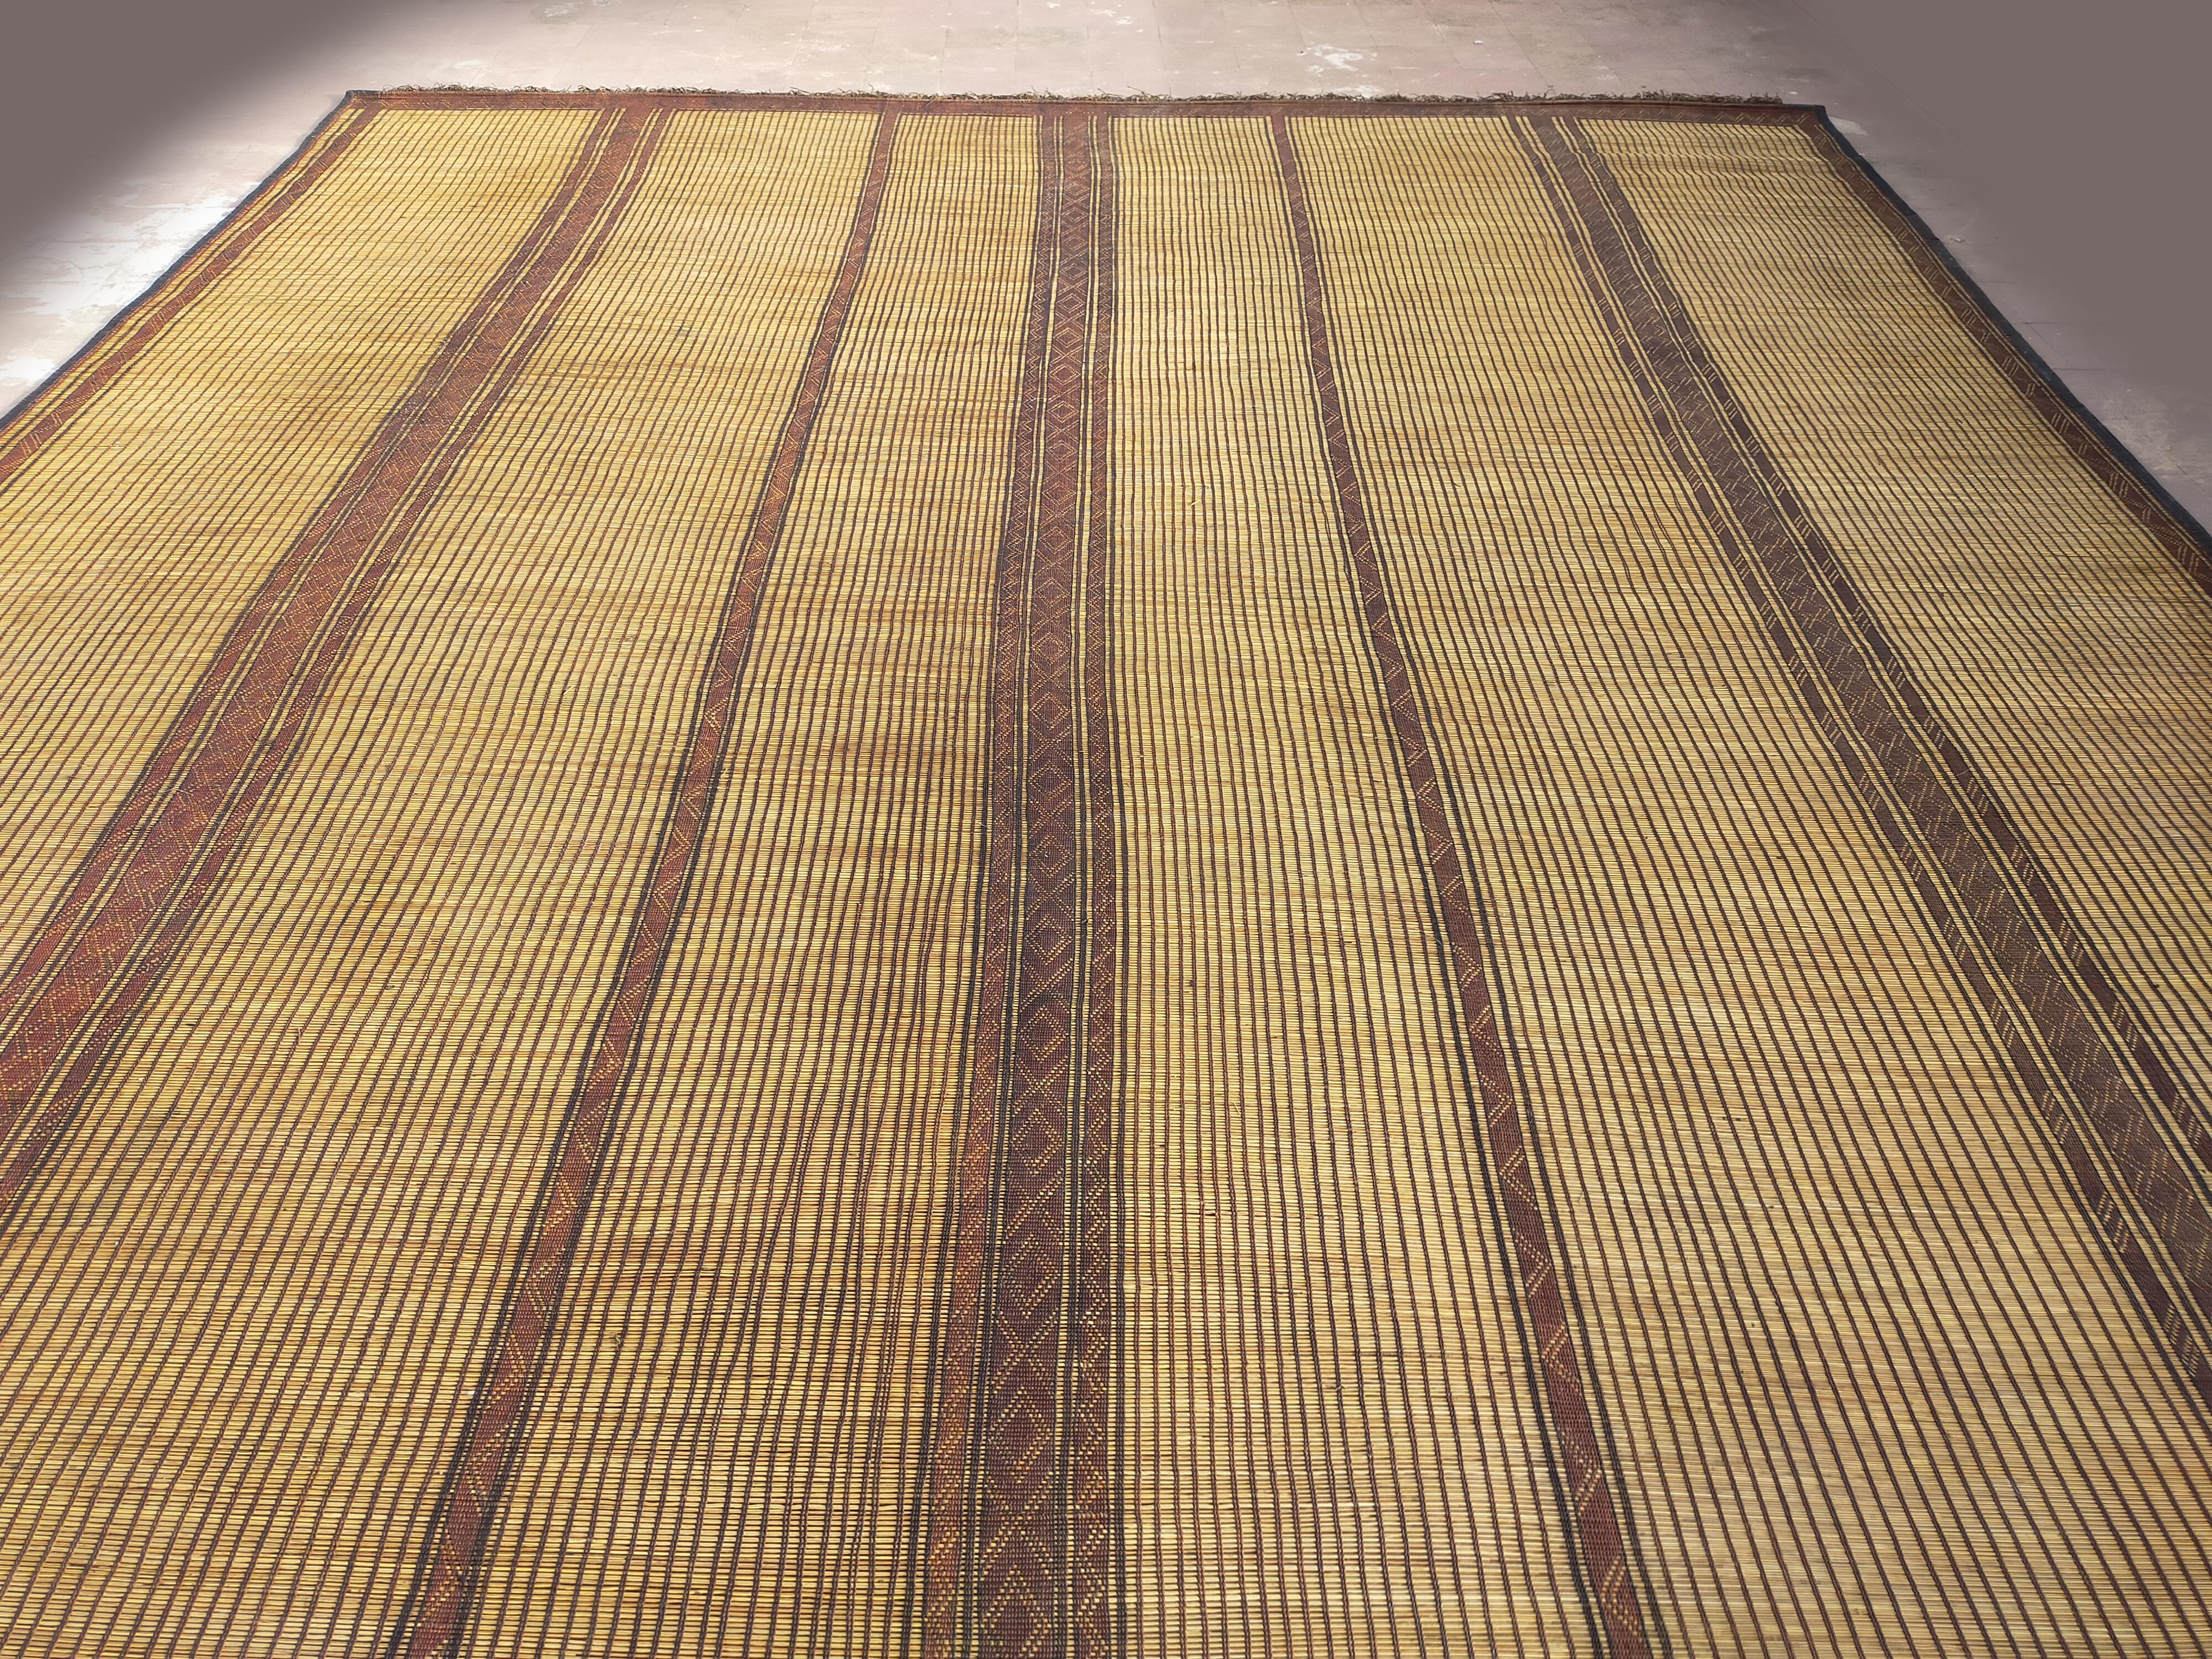 Teppichmatte aus Mauretanien Sahara, aus Palmenholz und Leder mit grafischem Muster, ca. 1950-1960er Jahre.
Abmessungen: 180 cm x 310 cm.